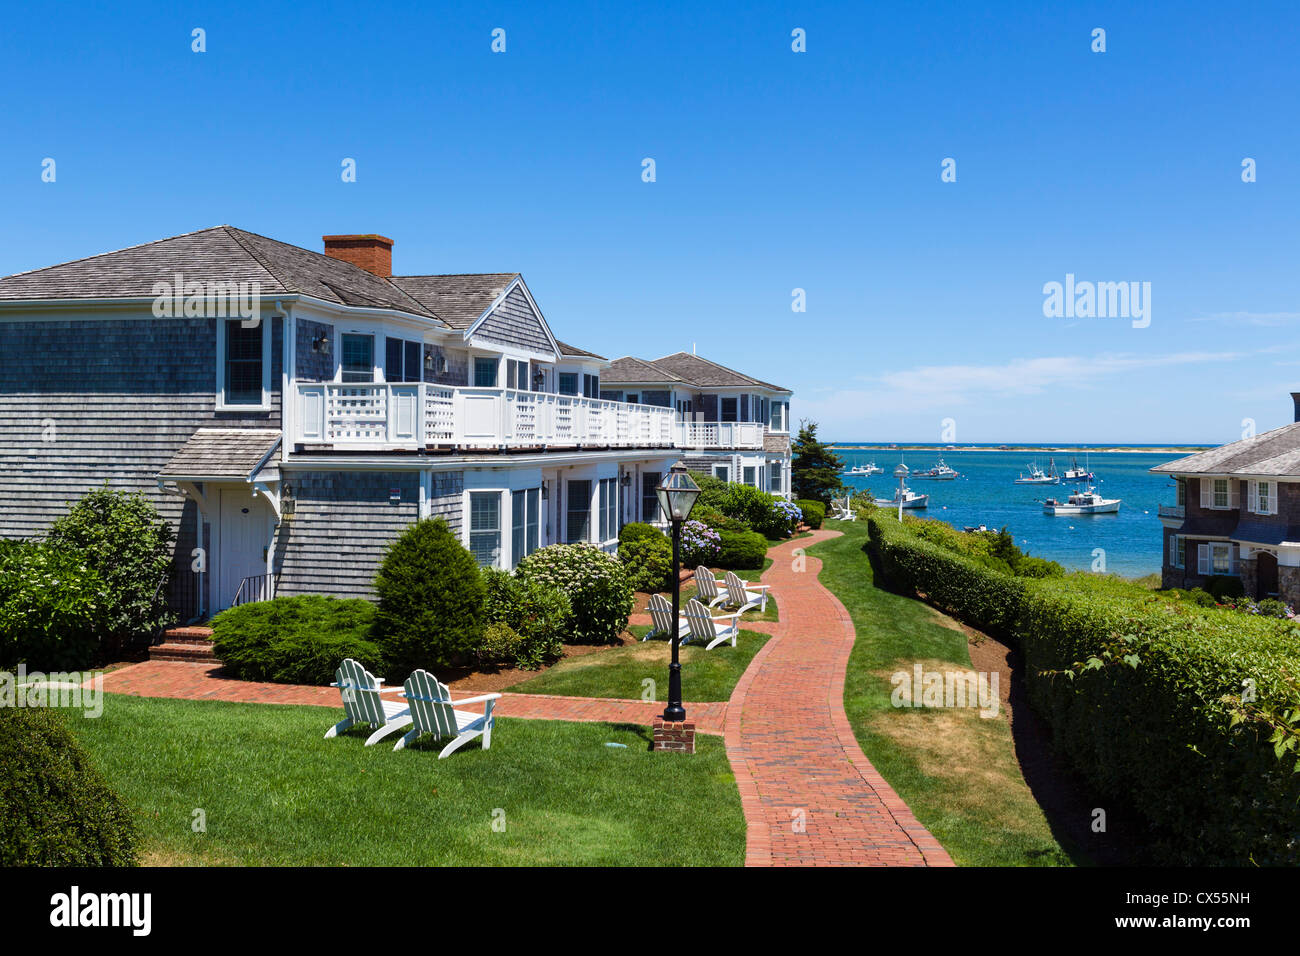 Beachfront apartments in Chatham, Cape Cod, Massachusetts, USA Stock Photo